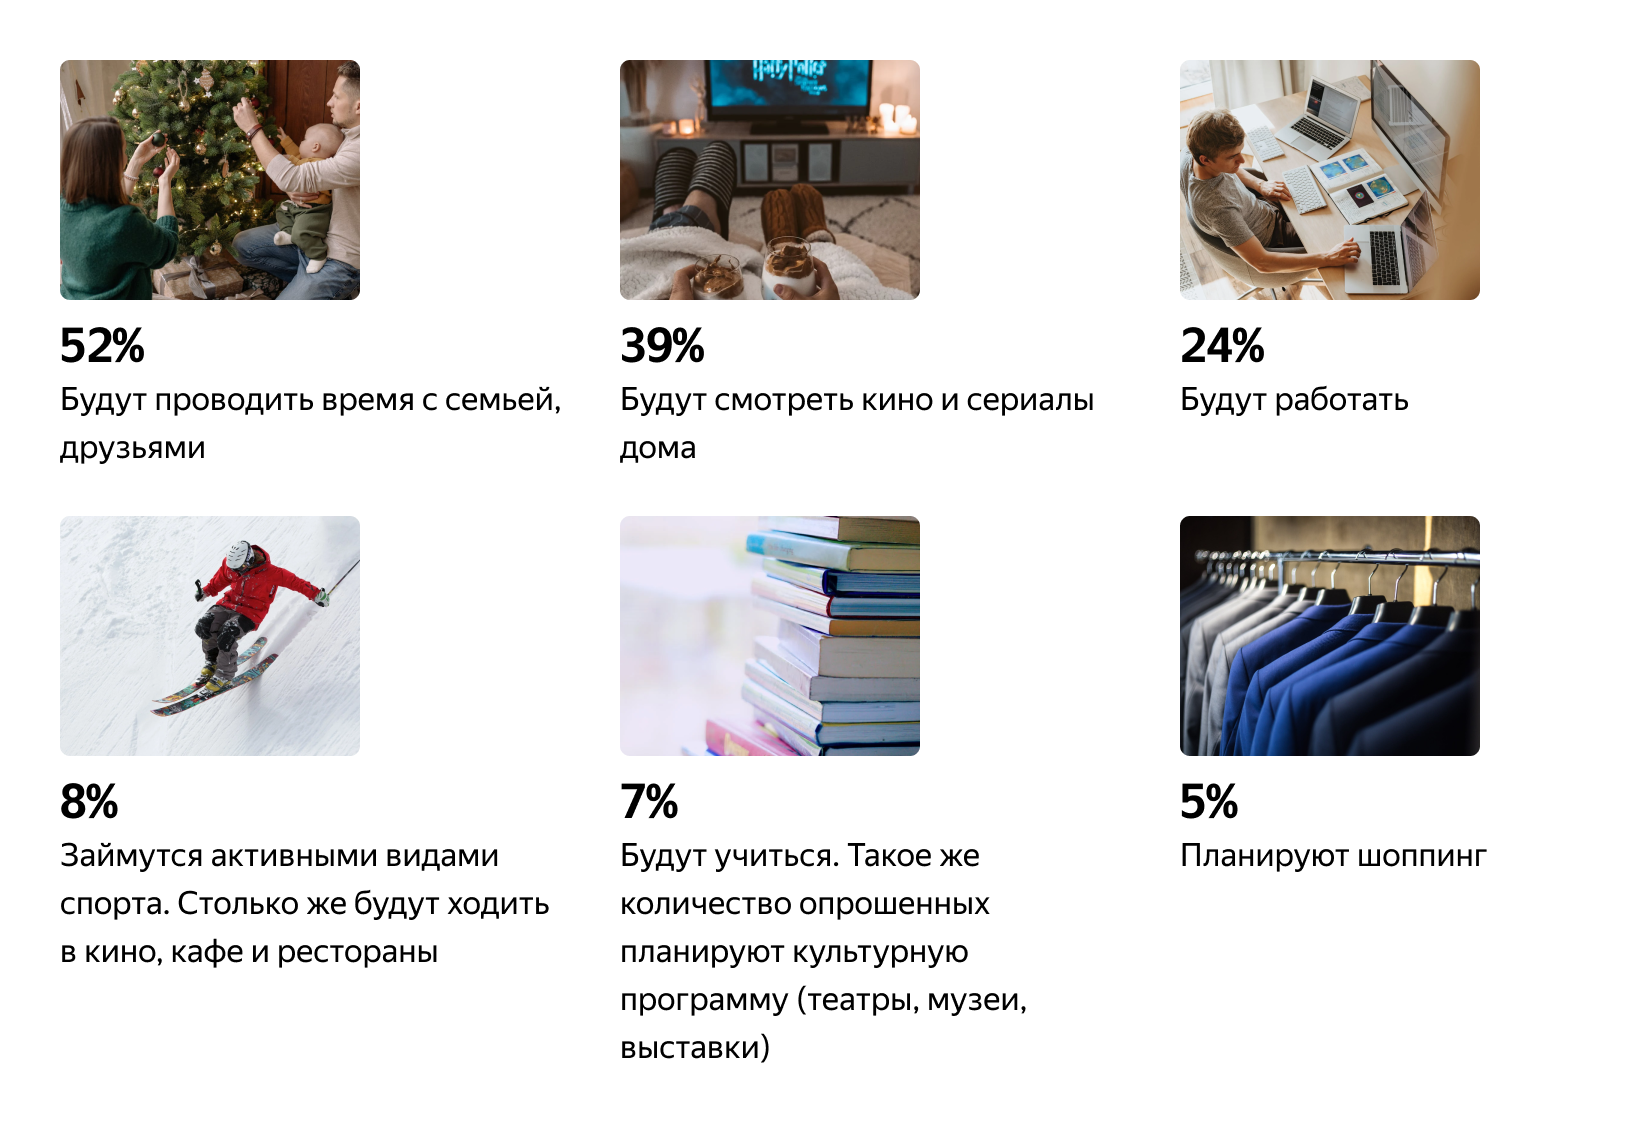 Яндекс выяснил, что россияне хотят получить в подарок на Новый год